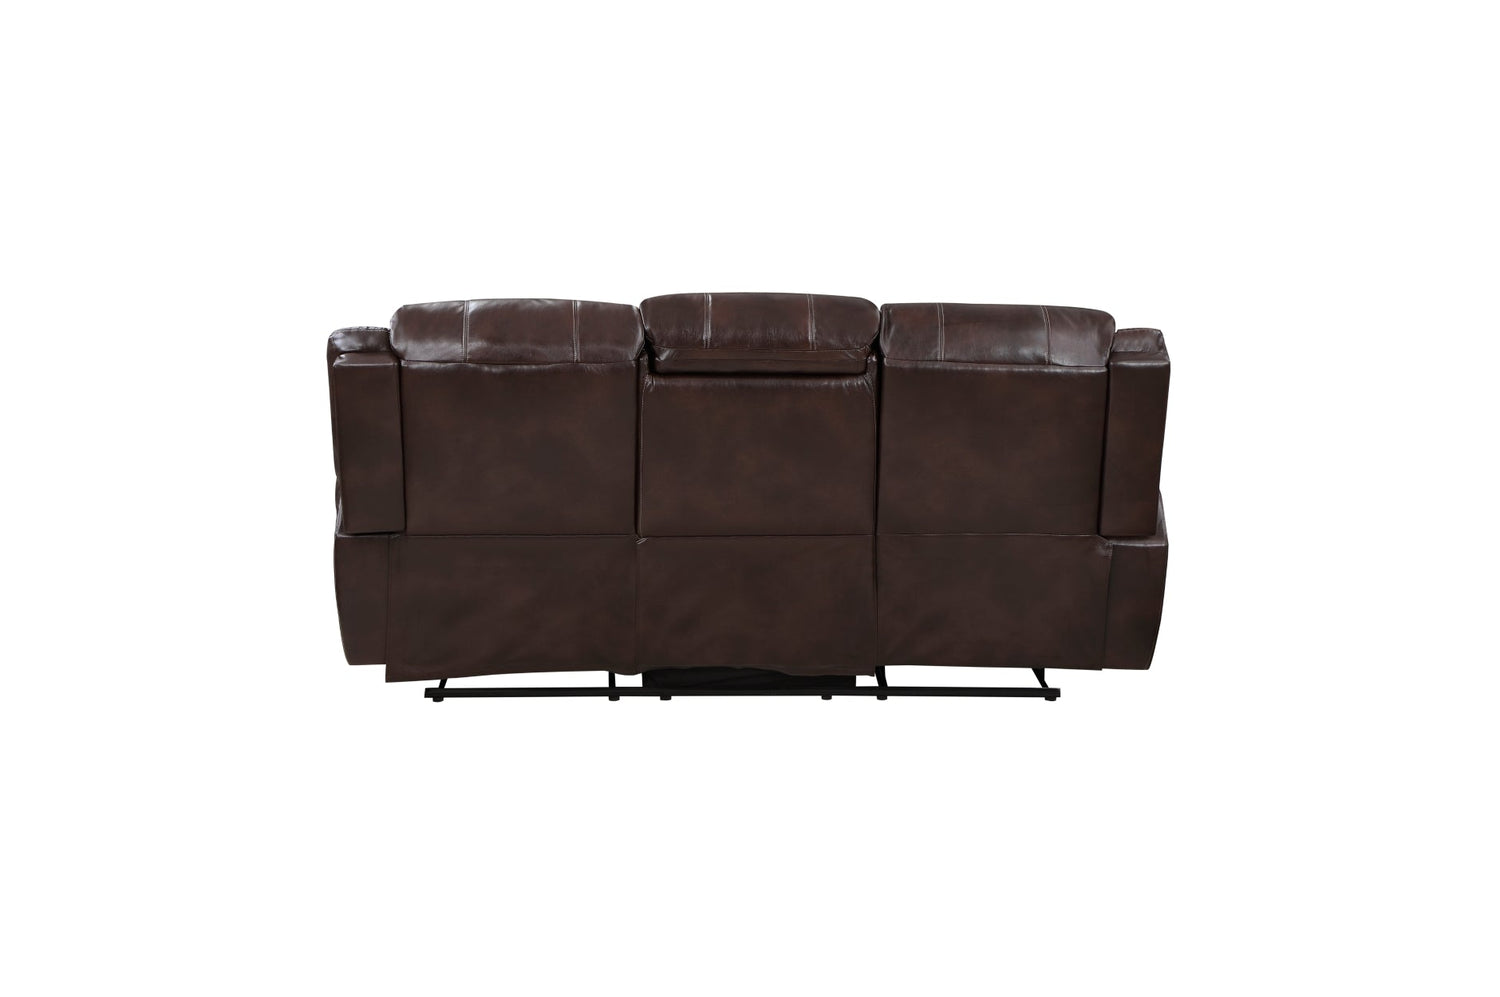 Center Hill Brown Bonded Leather Reclining Living Room Set - SET | 9668NBR-3 | 9668NBR-2 | 9668NBR-1 - Bien Home Furniture &amp; Electronics